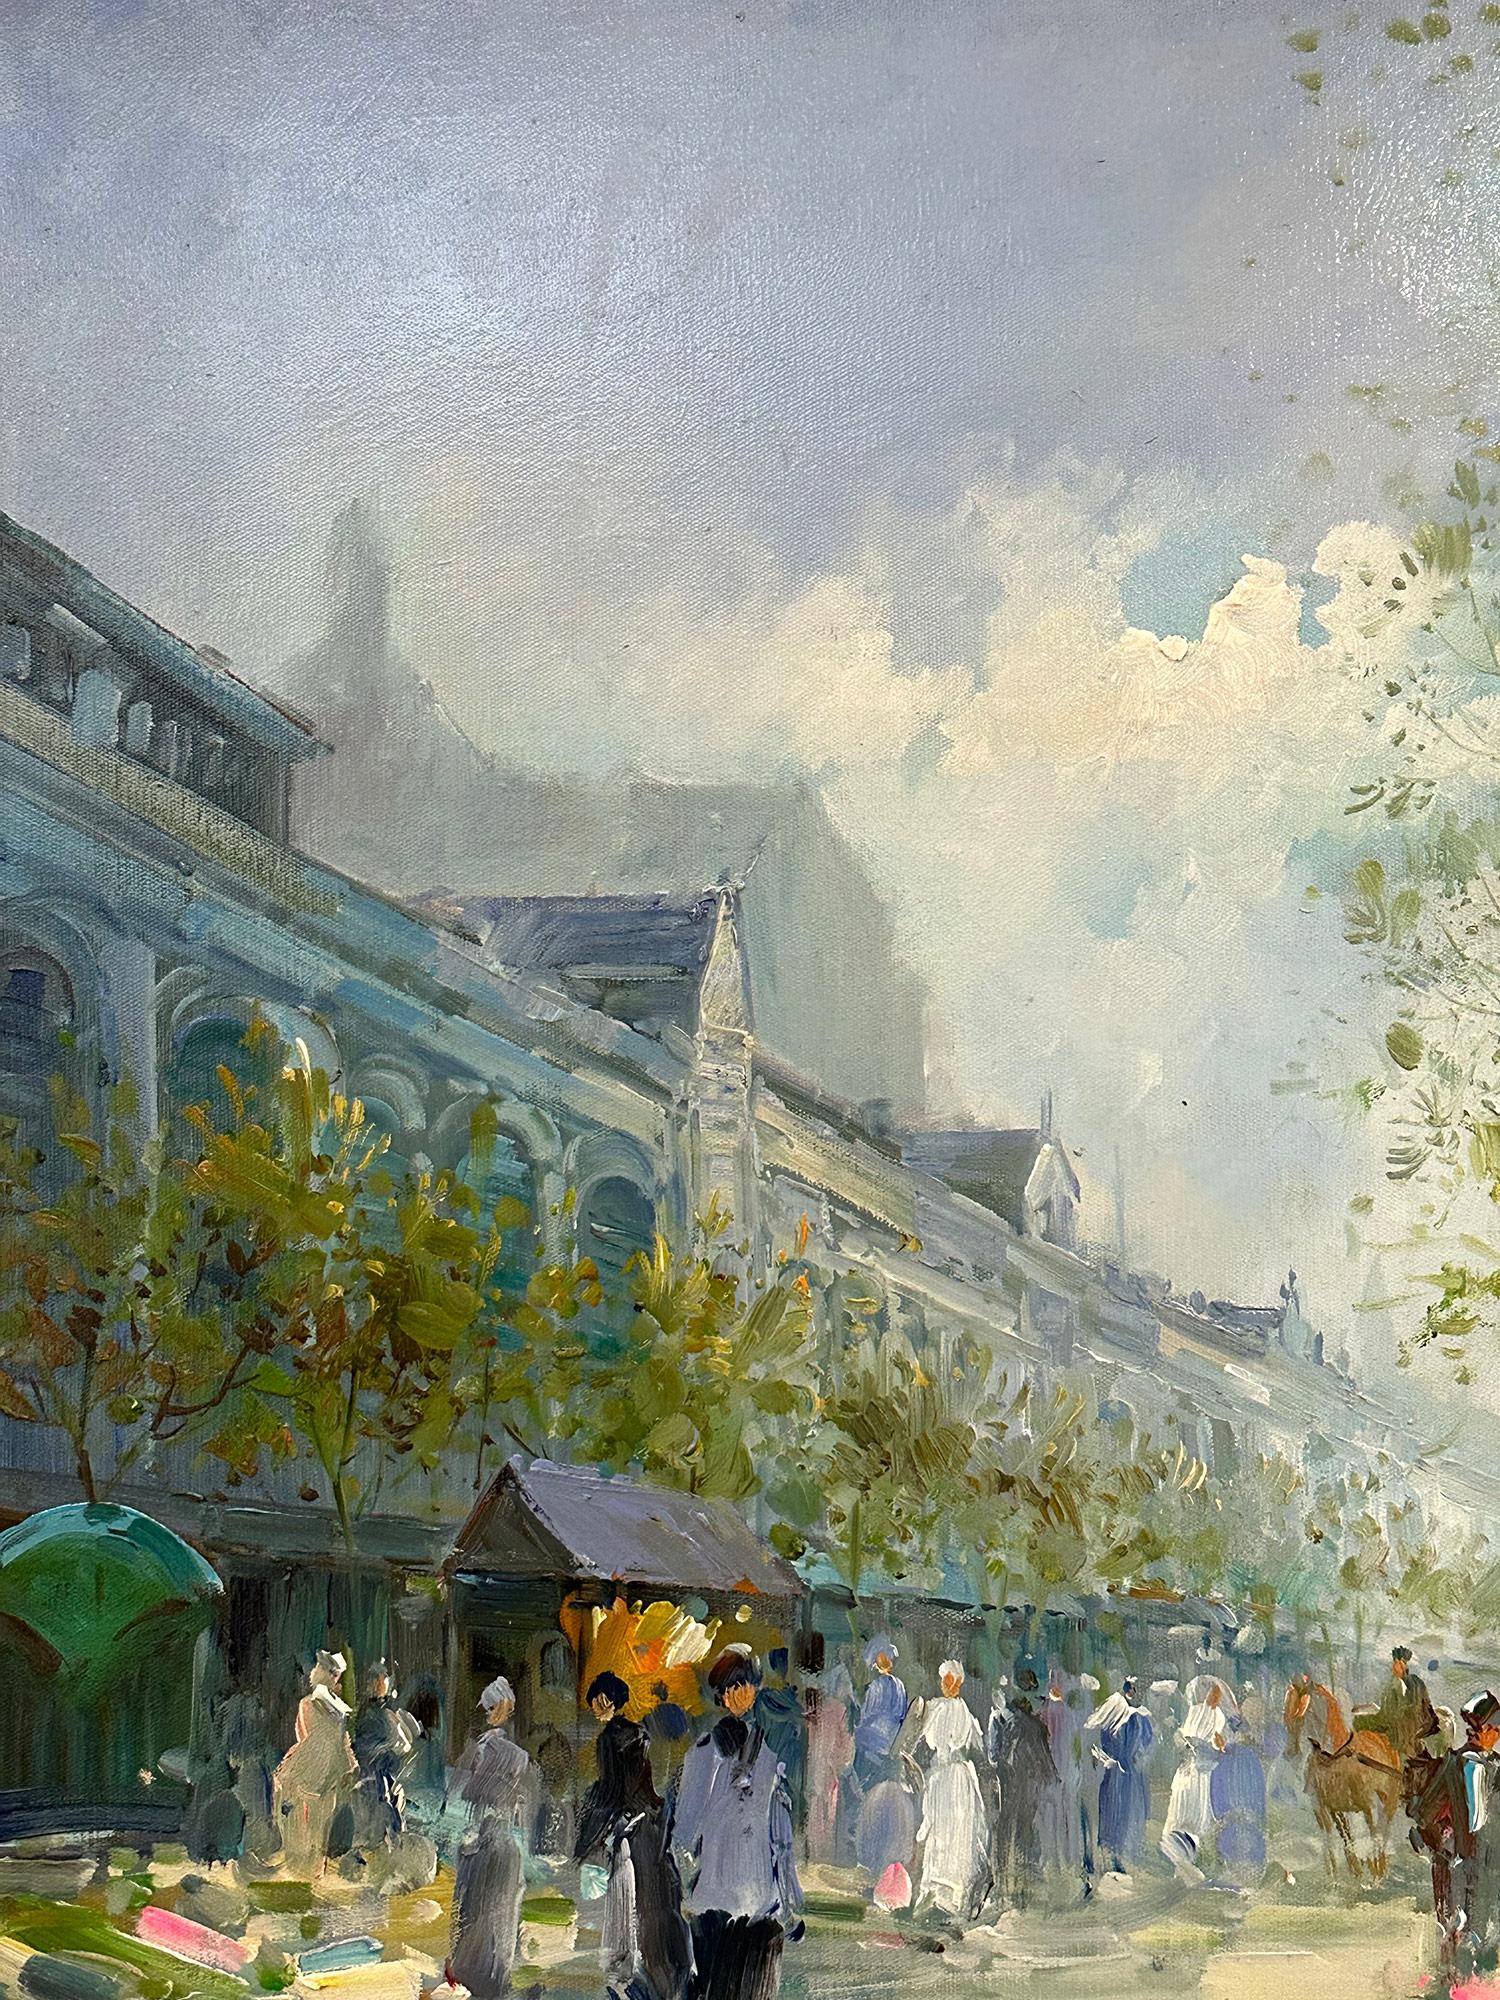 Une belle peinture à l'huile sur toile de l'artiste français Te Pencke. Pencke était un peintre parisien connu pour ses paysages urbains colorés décrivant l'époque de sa génération. Son travail est comparable à ceux de Jules Herve, Antoine Blanchard